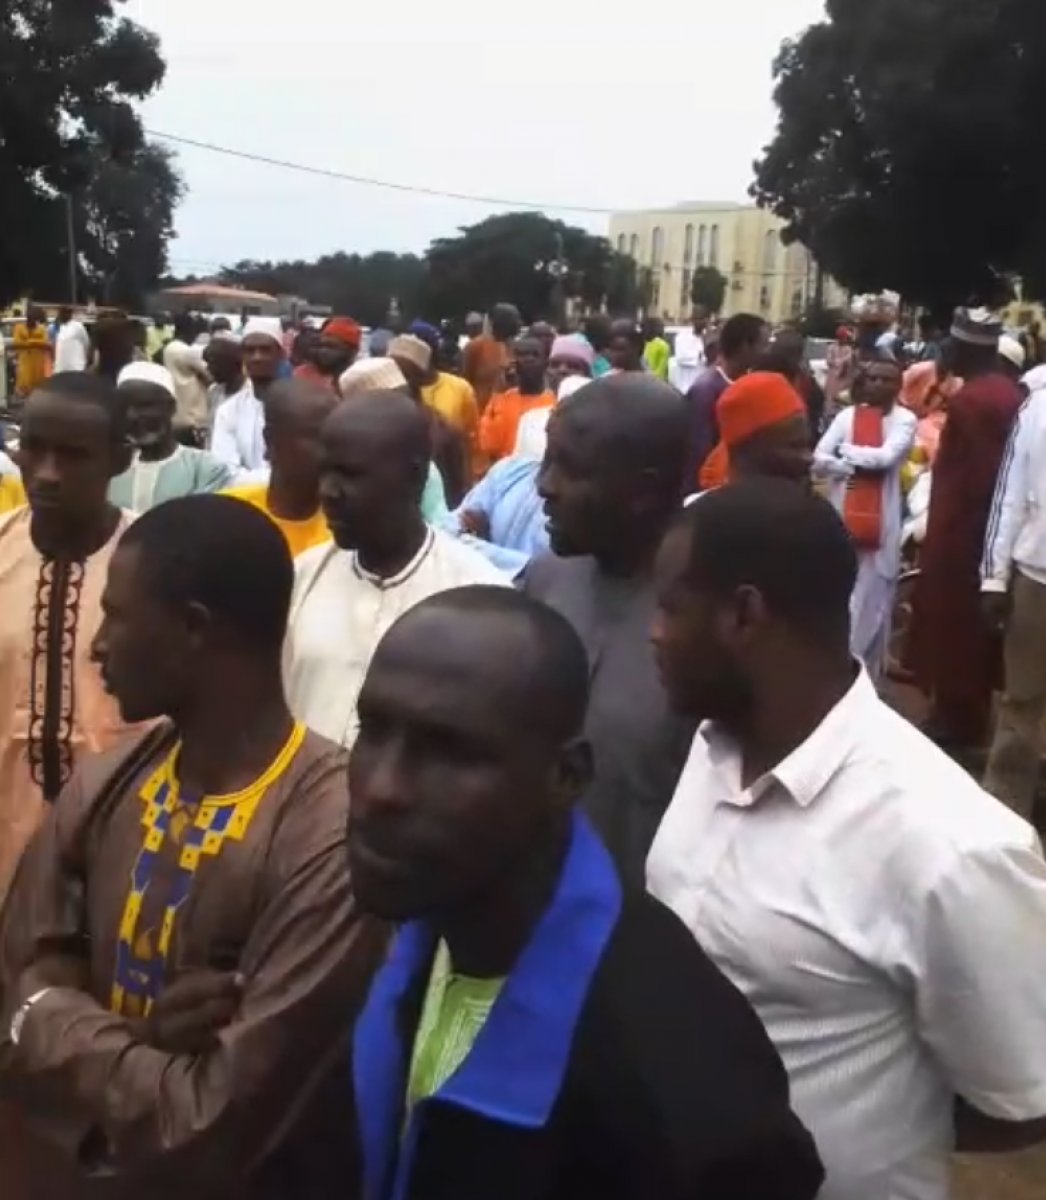 Kamerun da Müslümanlara haç kolyesi takın baskısı #3